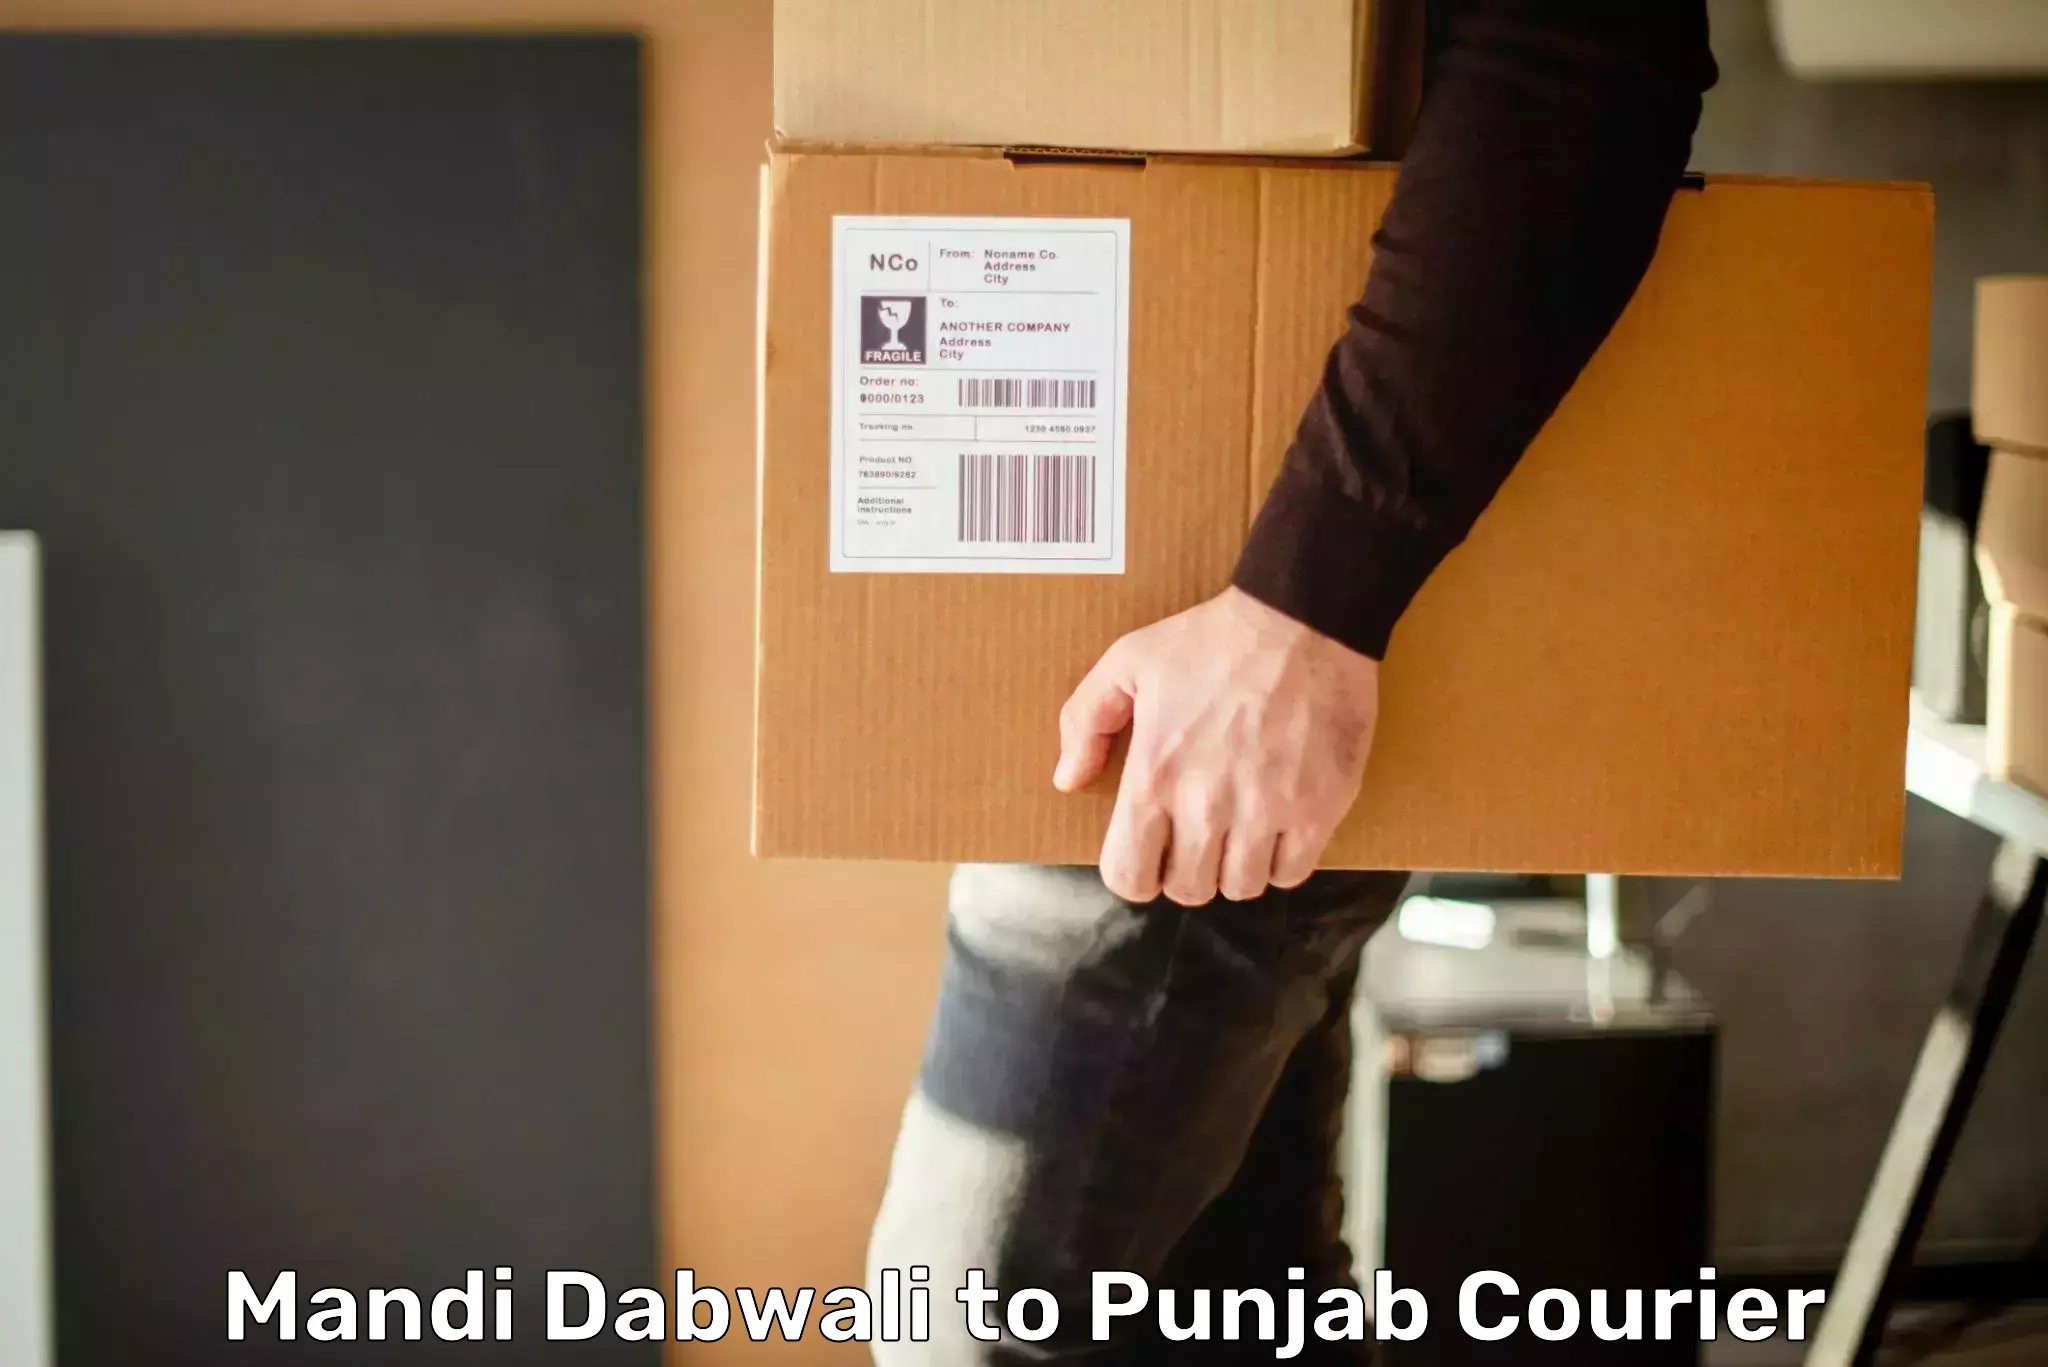 International courier networks Mandi Dabwali to Punjab